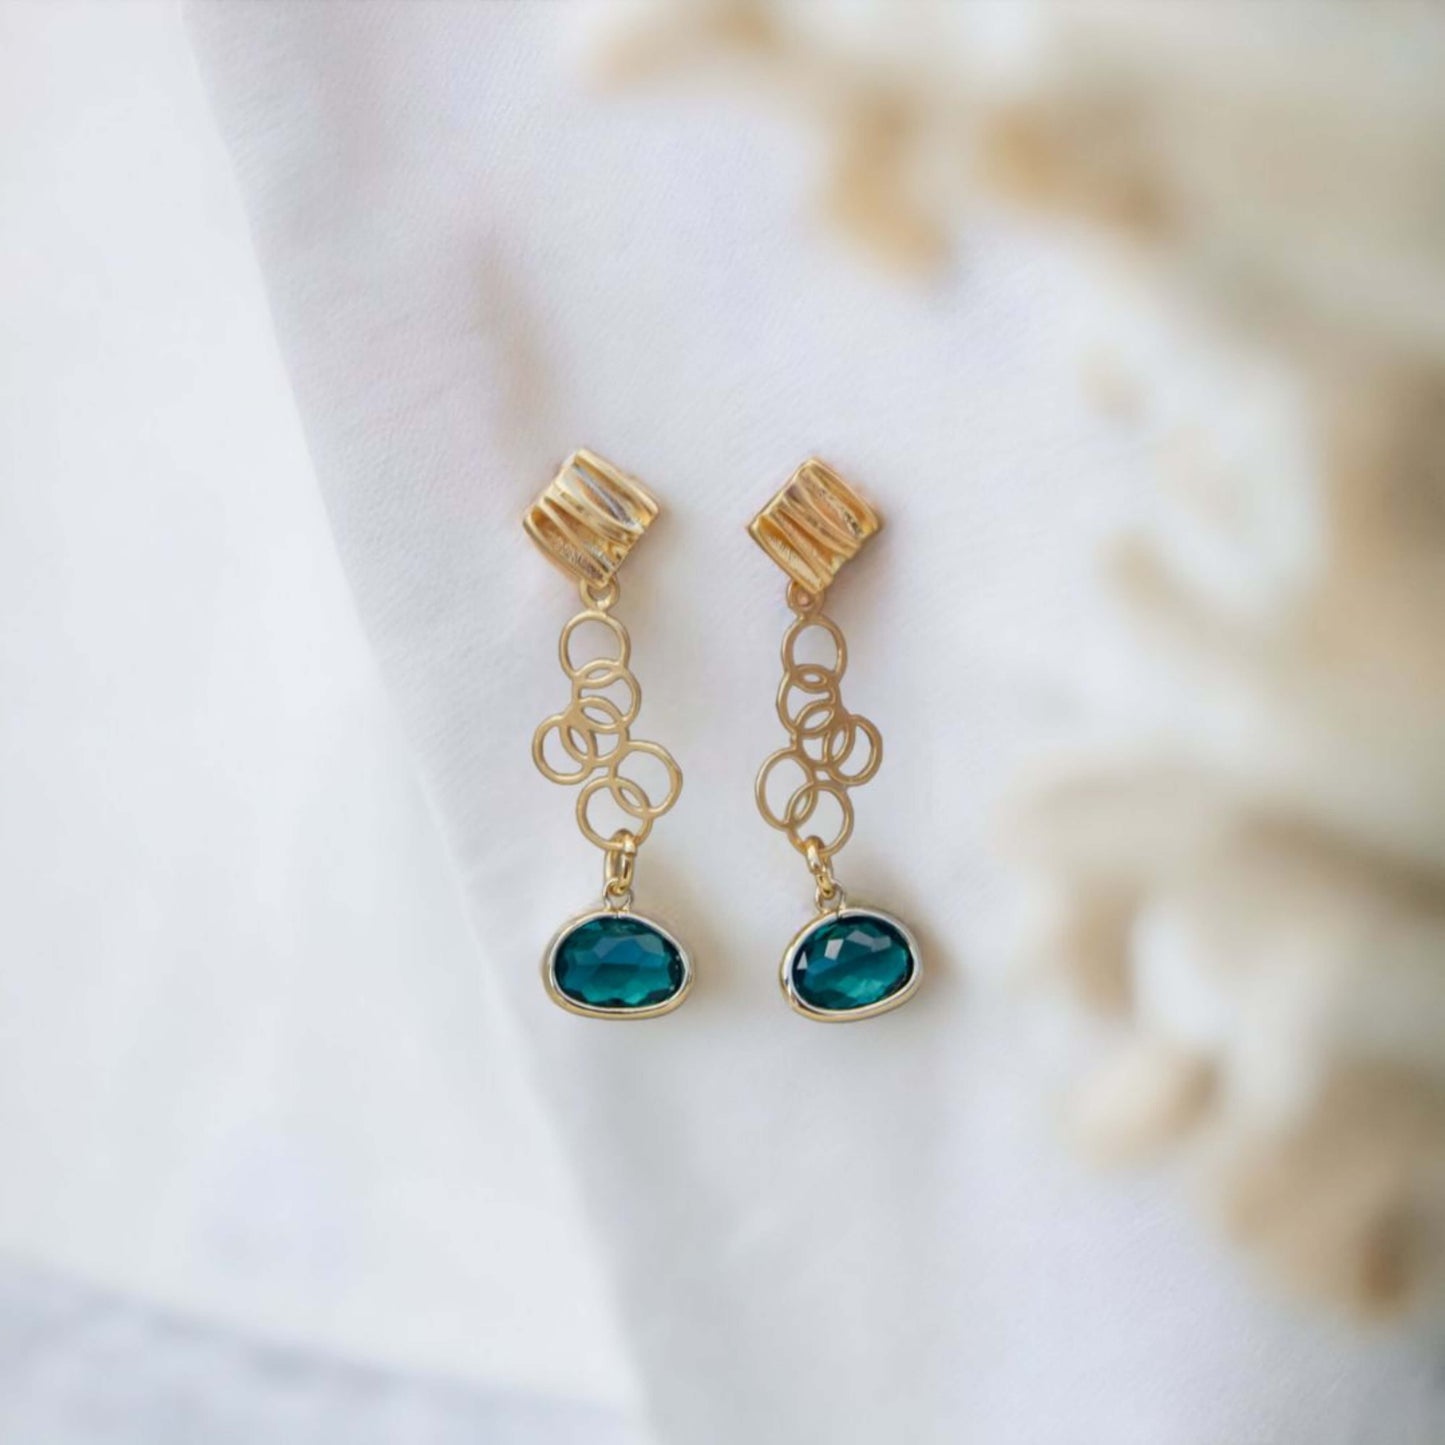 Rania - Verfijnde oorbellen met een subtiele kleurrijke touch - Emerald - Oorbellen - Keelin Design